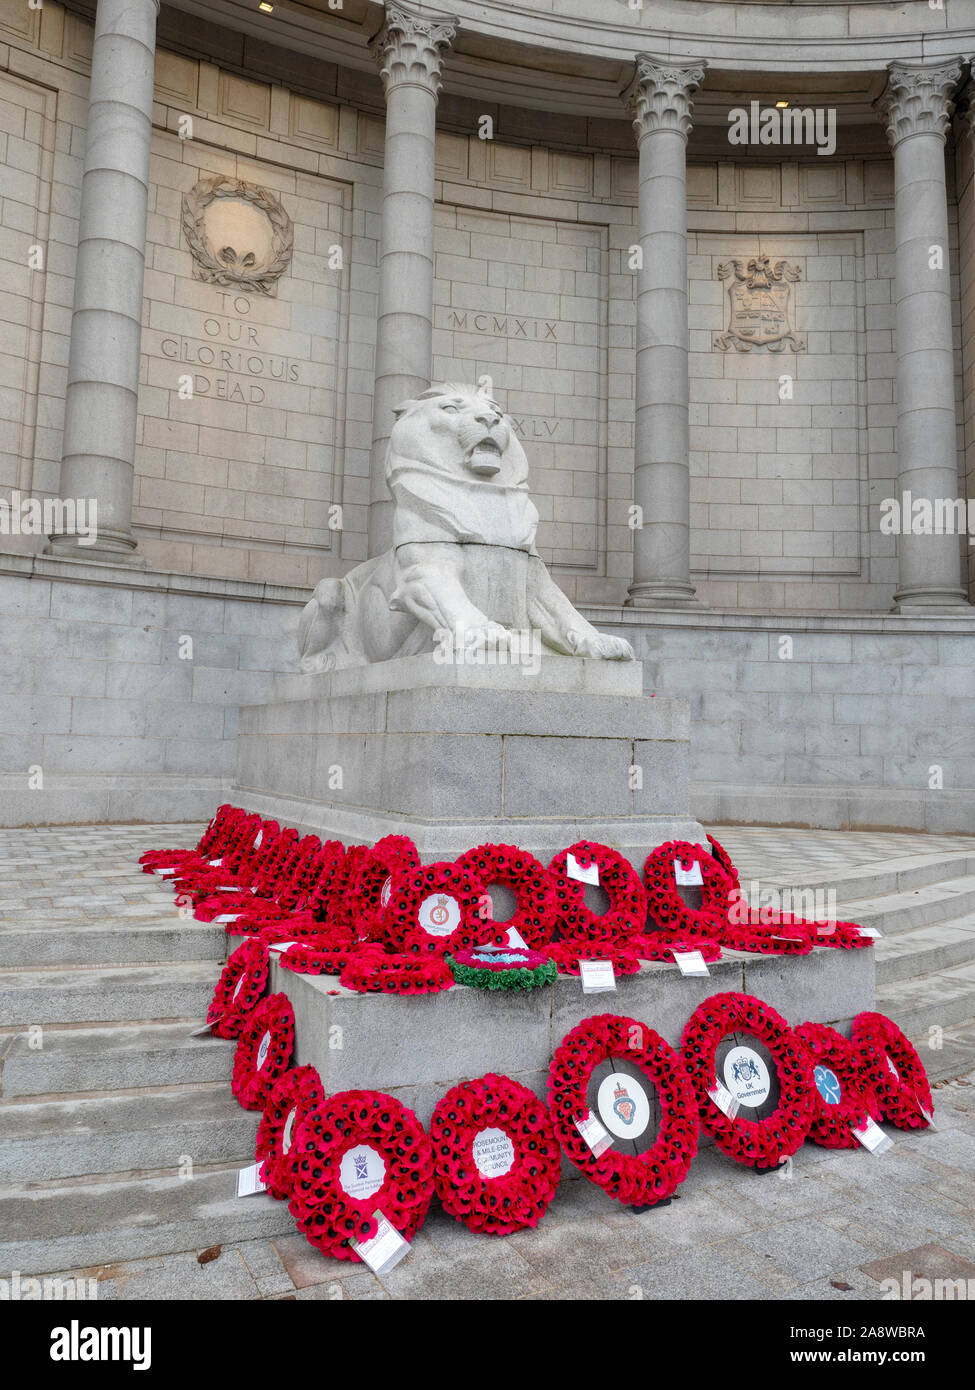 Aberdeen, Écosse - 10 Nov 2019 : coquelicot couronnes portées au Monument commémoratif de guerre Schoolhill à Aberdeen au cours de la cérémonie du Jour du Souvenir. Banque D'Images